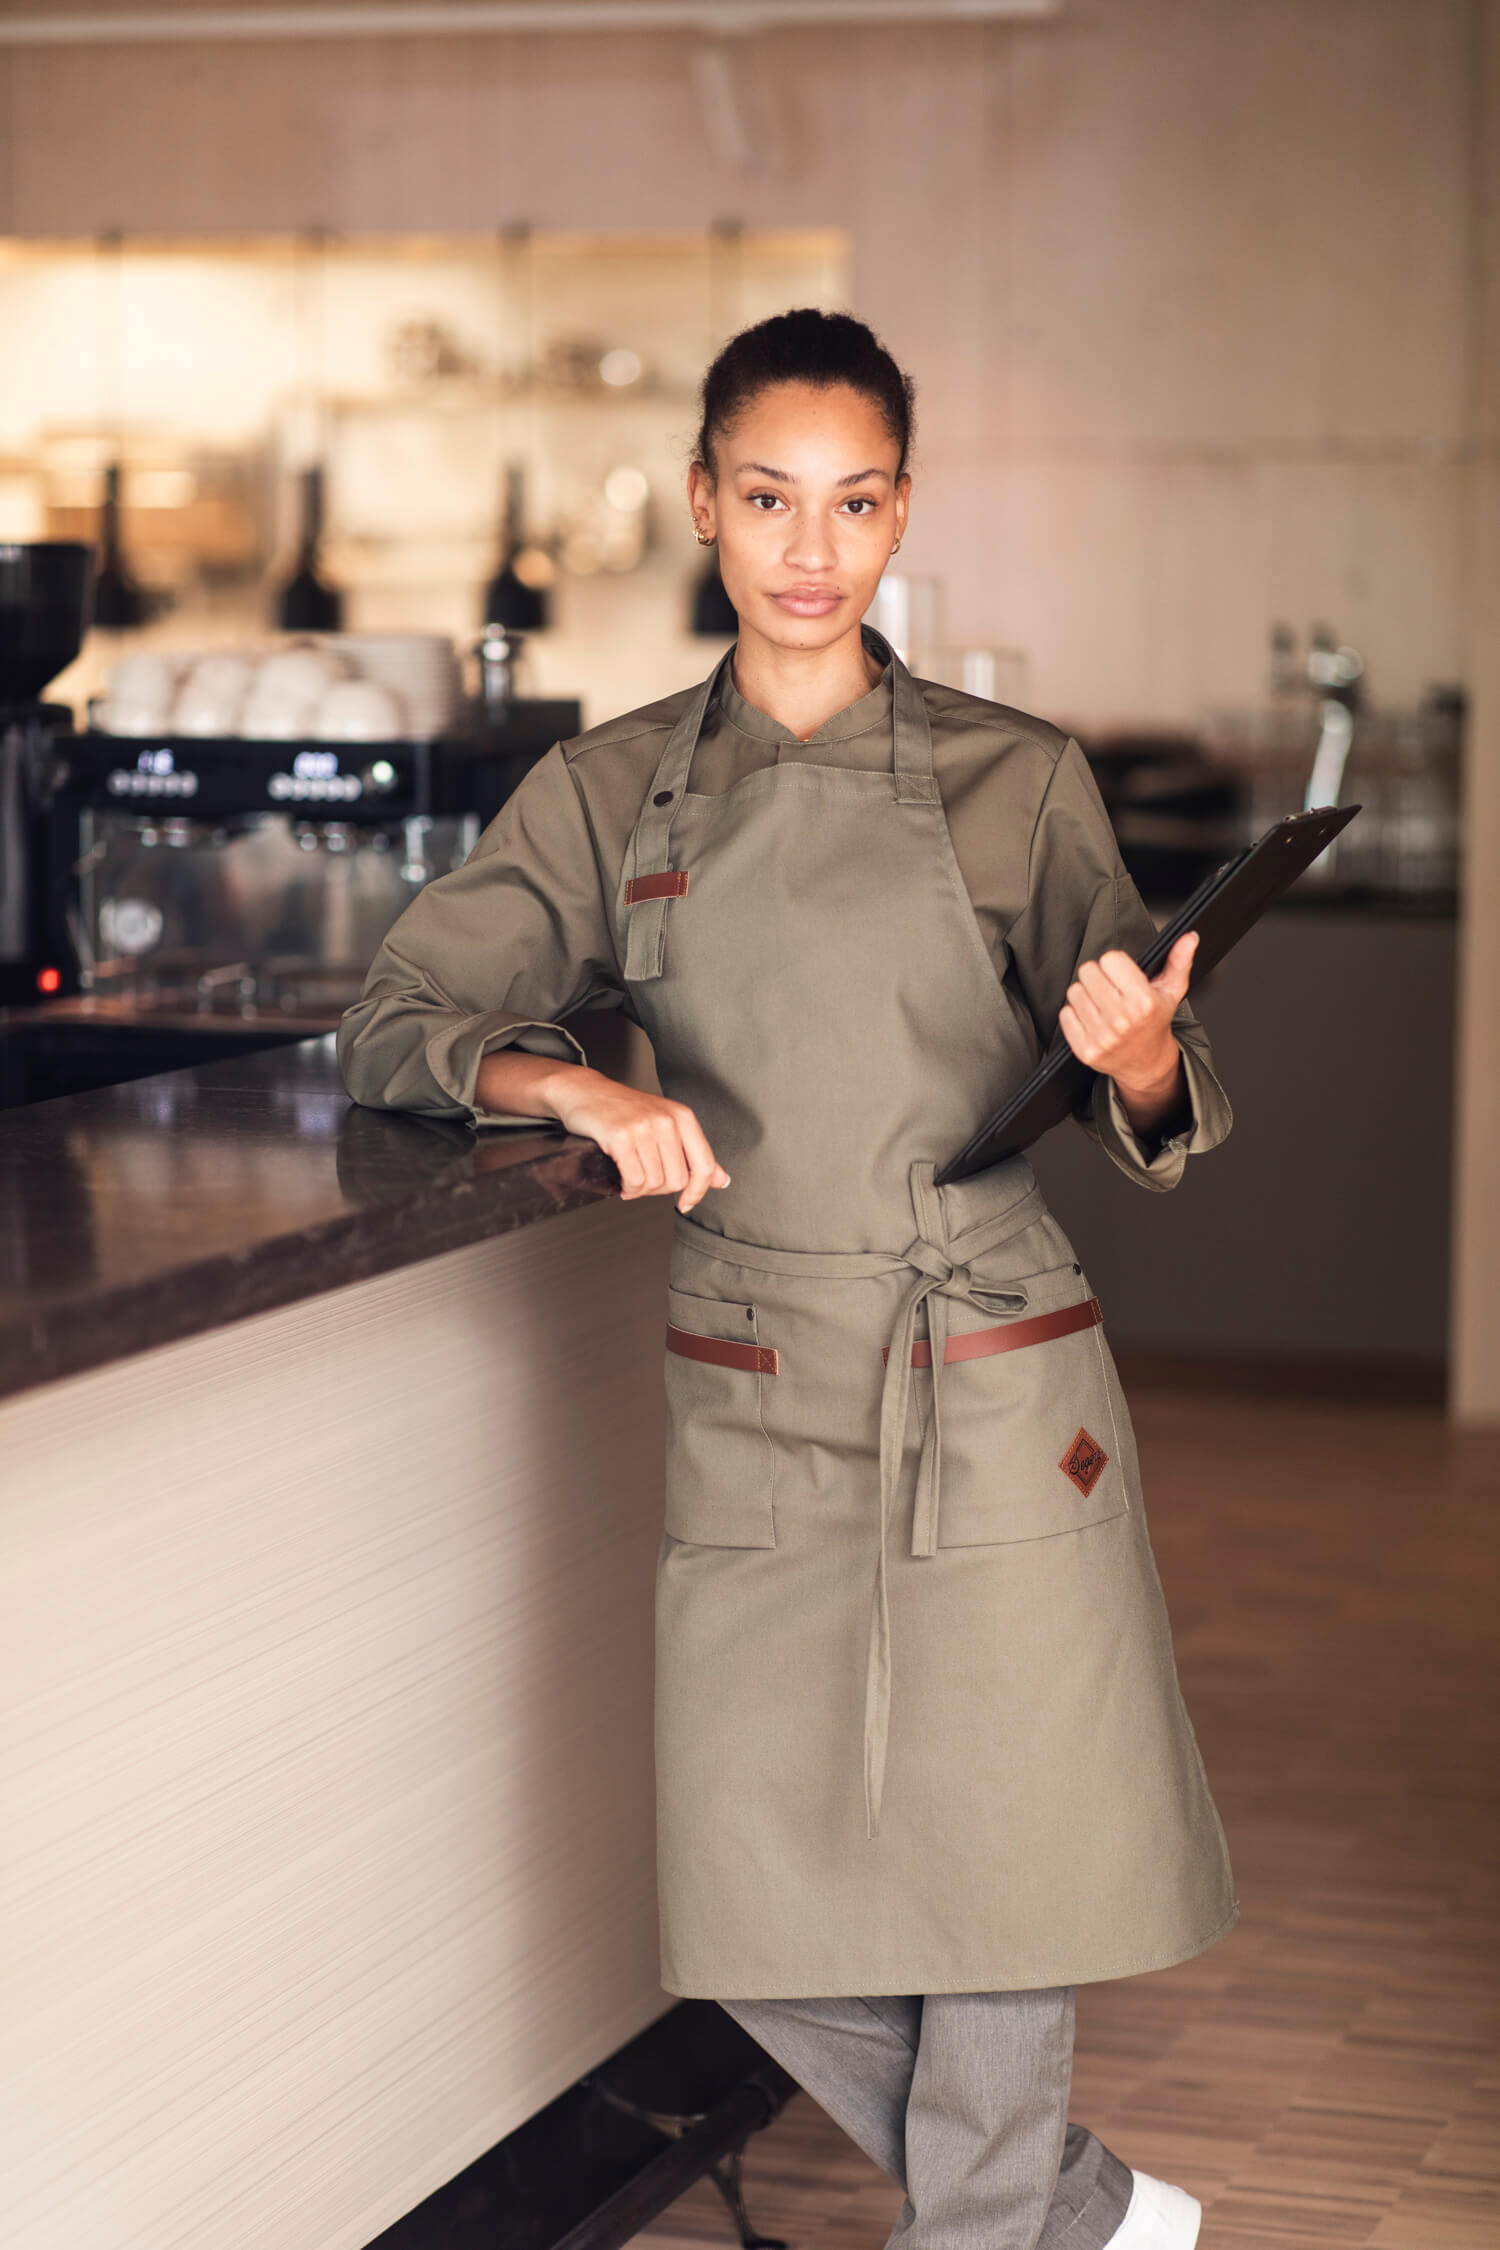 Professionell kvinnlig kock poserar säkert i restaurangmiljö, iklädd Segers nyaste kockskjorta modell 1099 och förkläde modell 4093 i en elegant olivgrön färg, redo för kulinariska utmaningar.